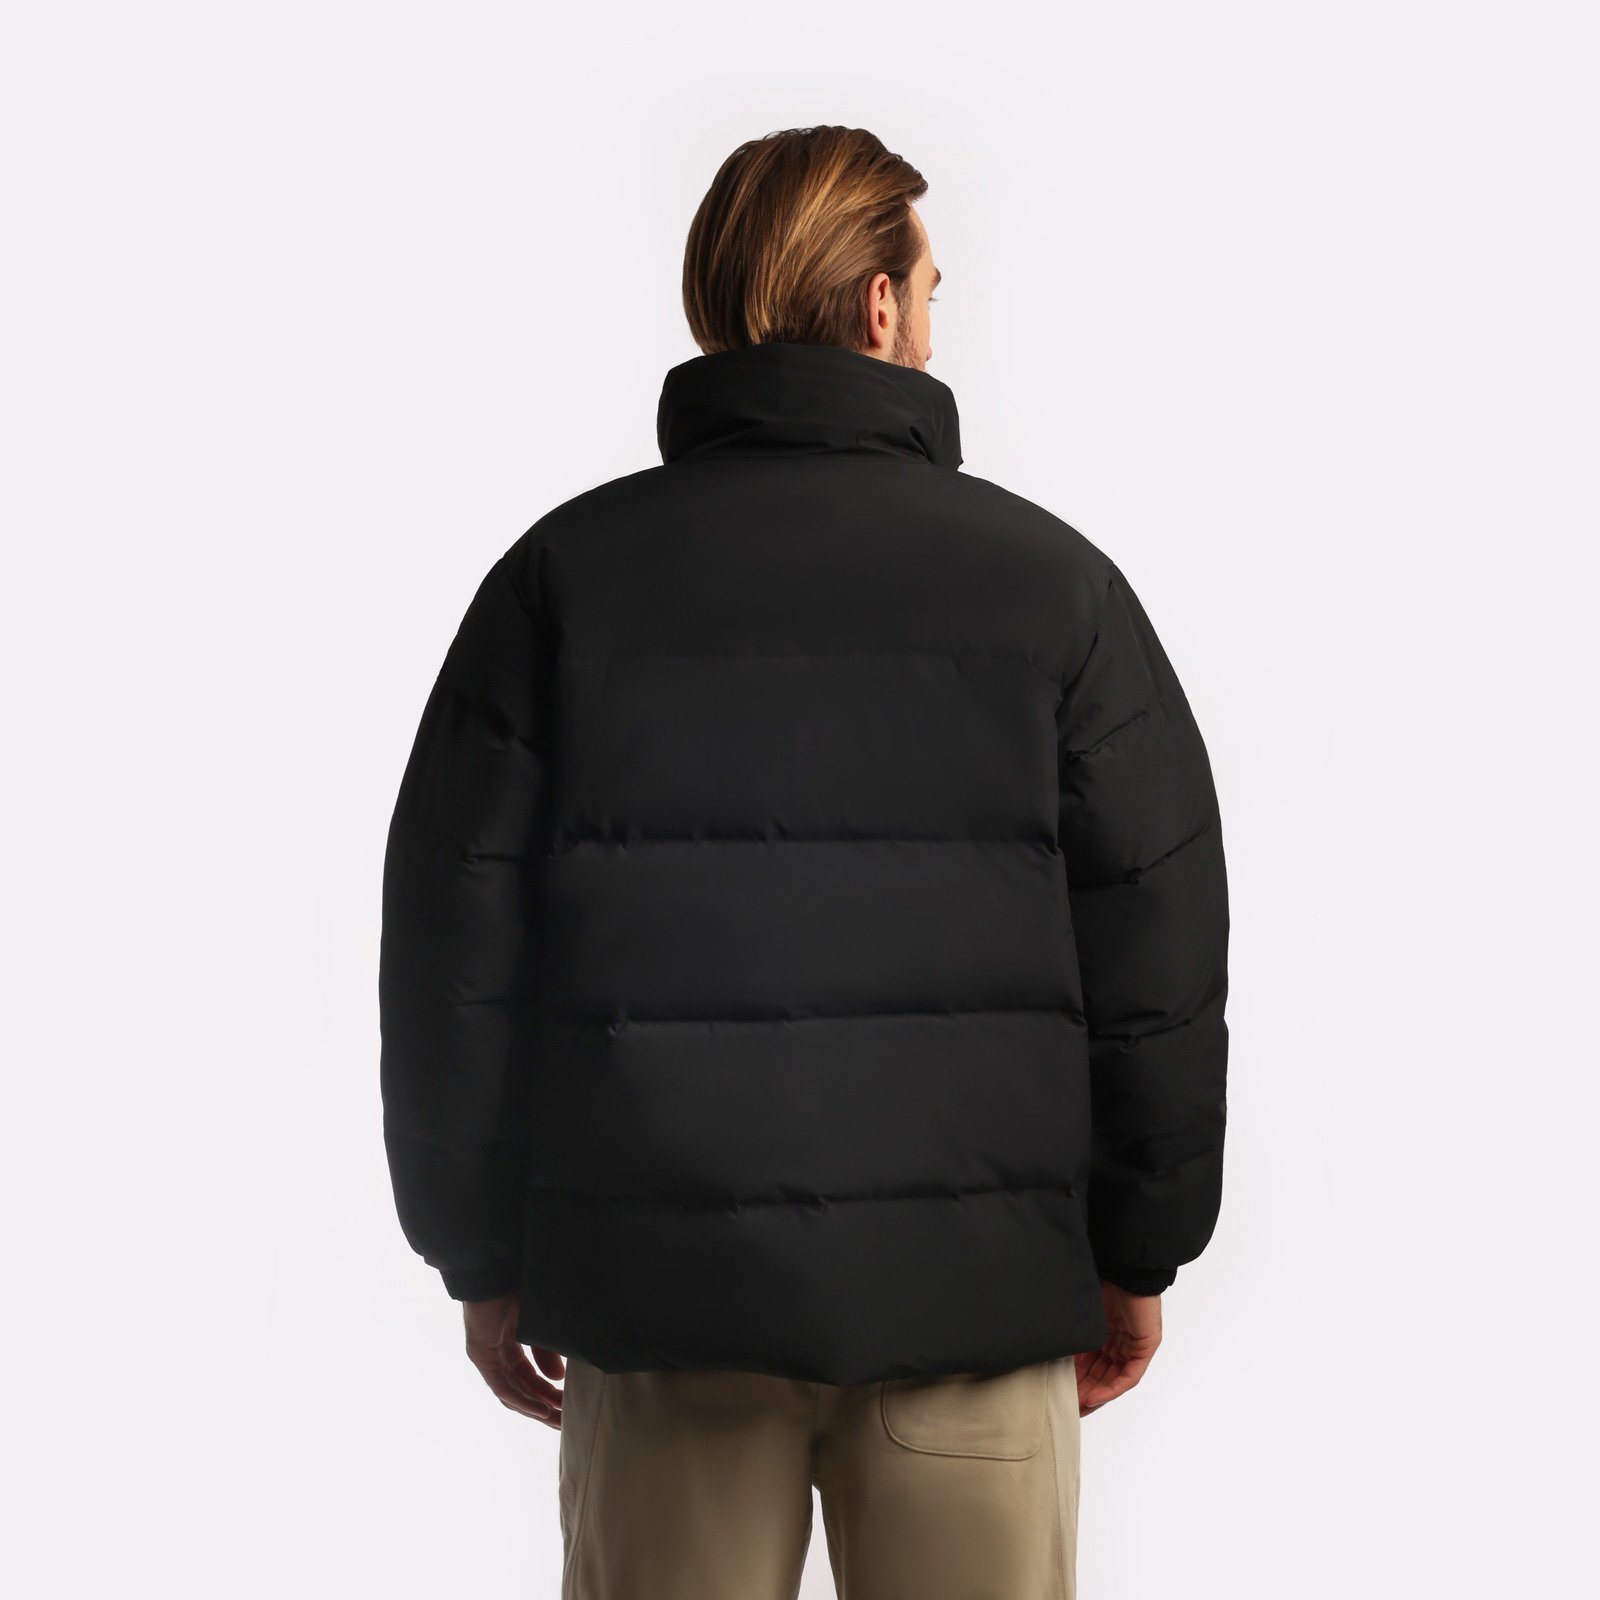 мужская черная куртка Carhartt WIP Danville Jacket I029450-black/wht - цена, описание, фото 4